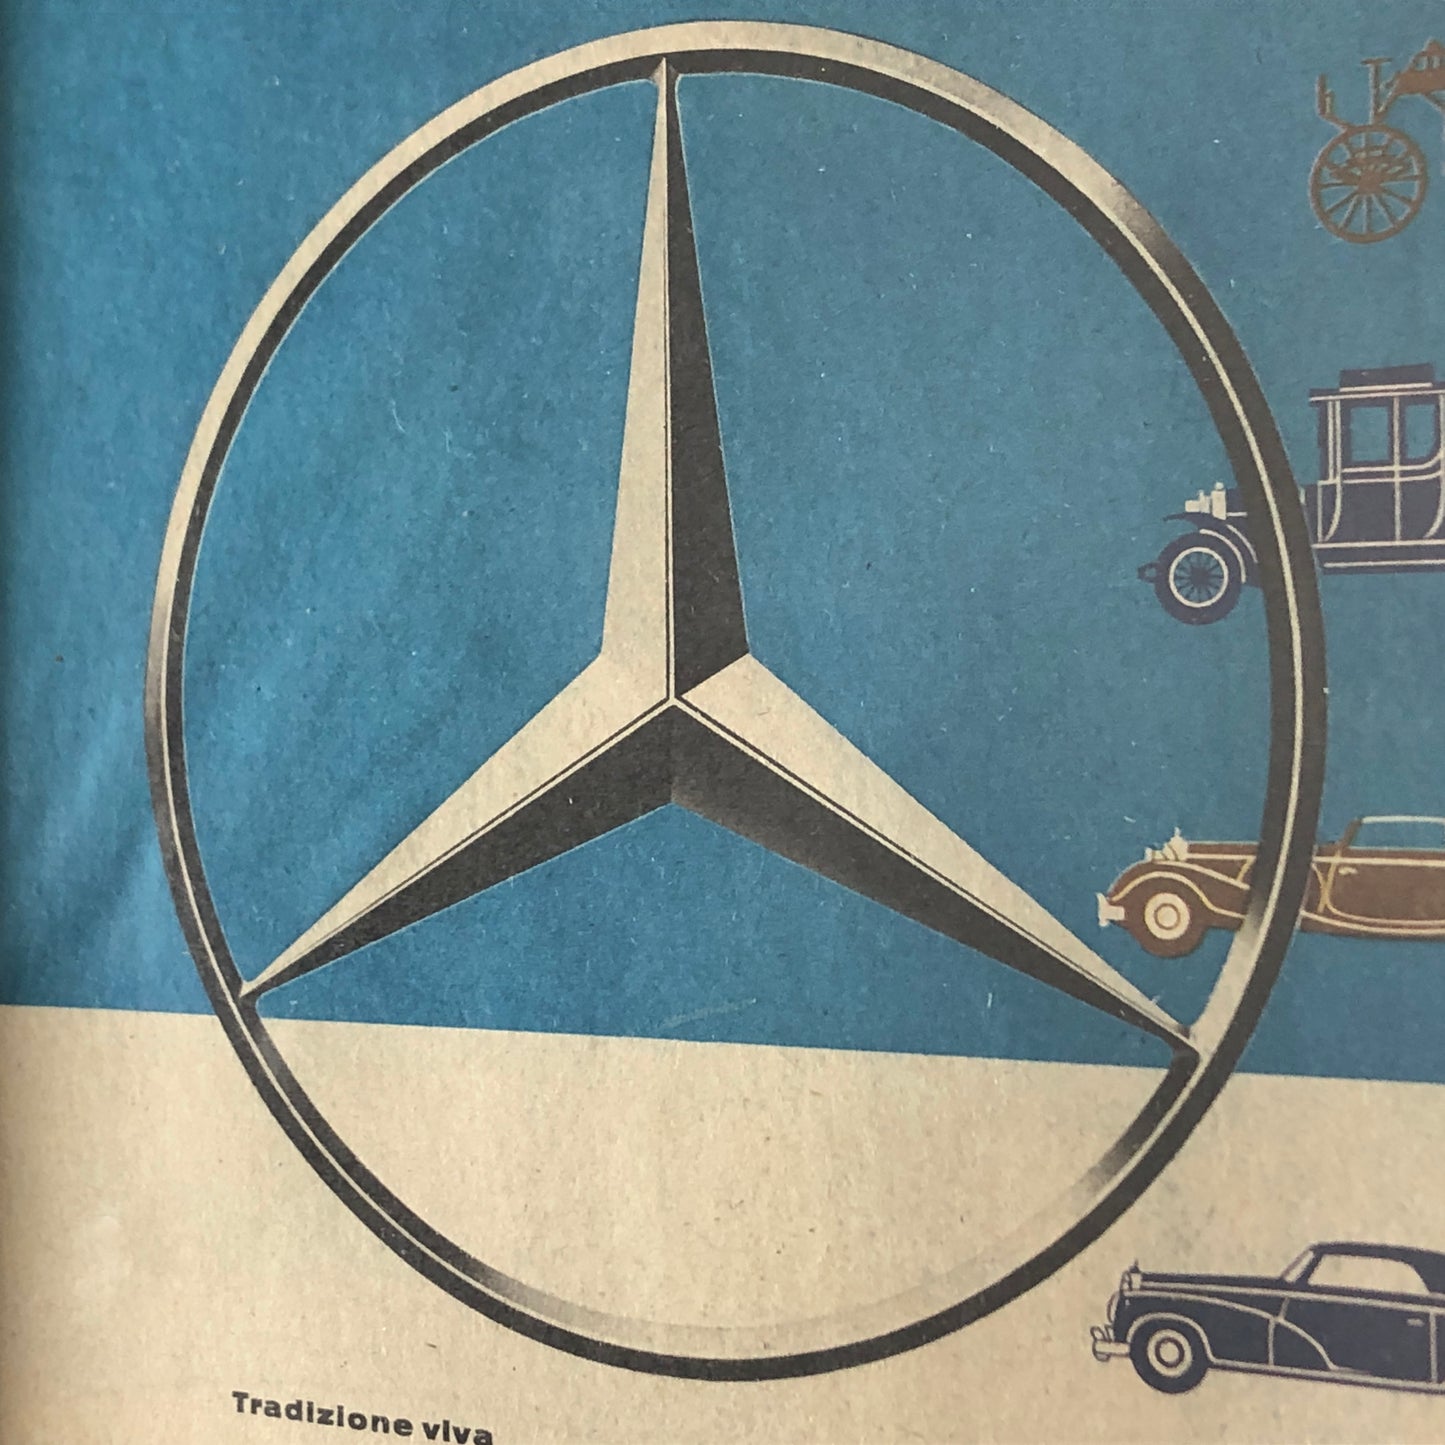 Mercedes-Benz, Pubblicità Anno 1960 Tradizione Viva Mercedes-Benz con Didascalia in Italiano